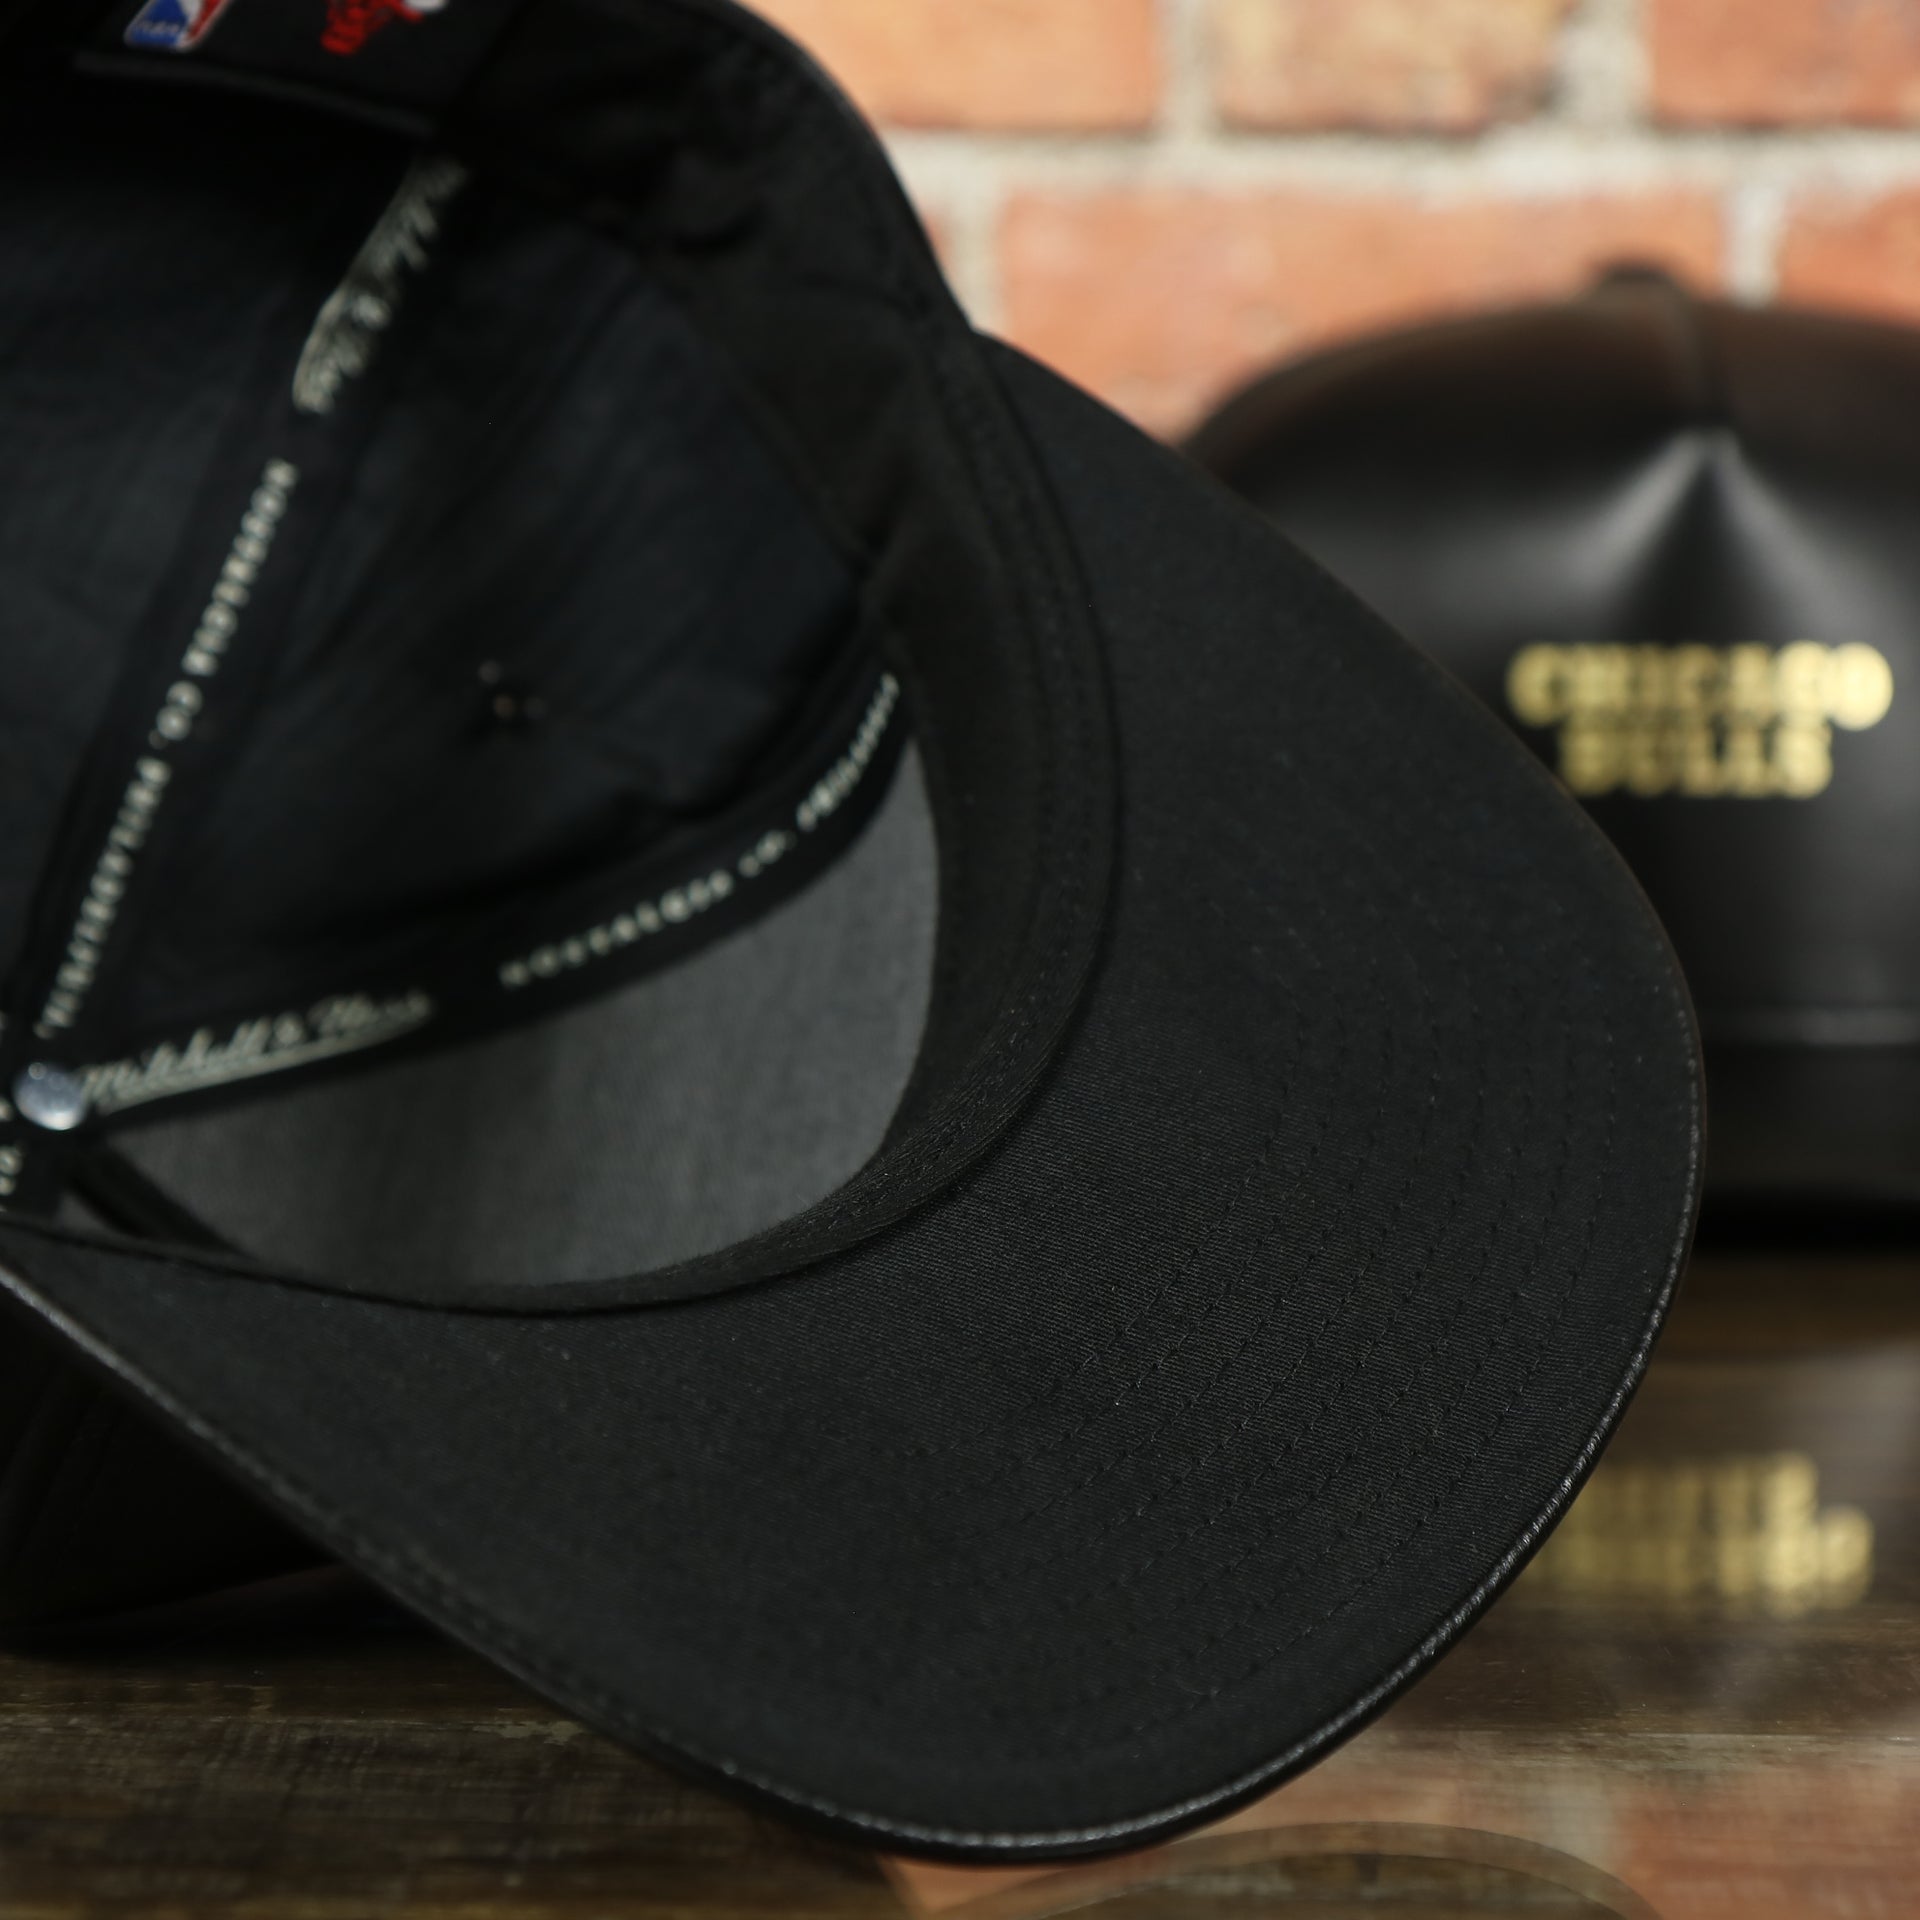 black under visor on the Chicago Bulls Leather Snapback | Black Bulls Snap Back with Gold Foil Design